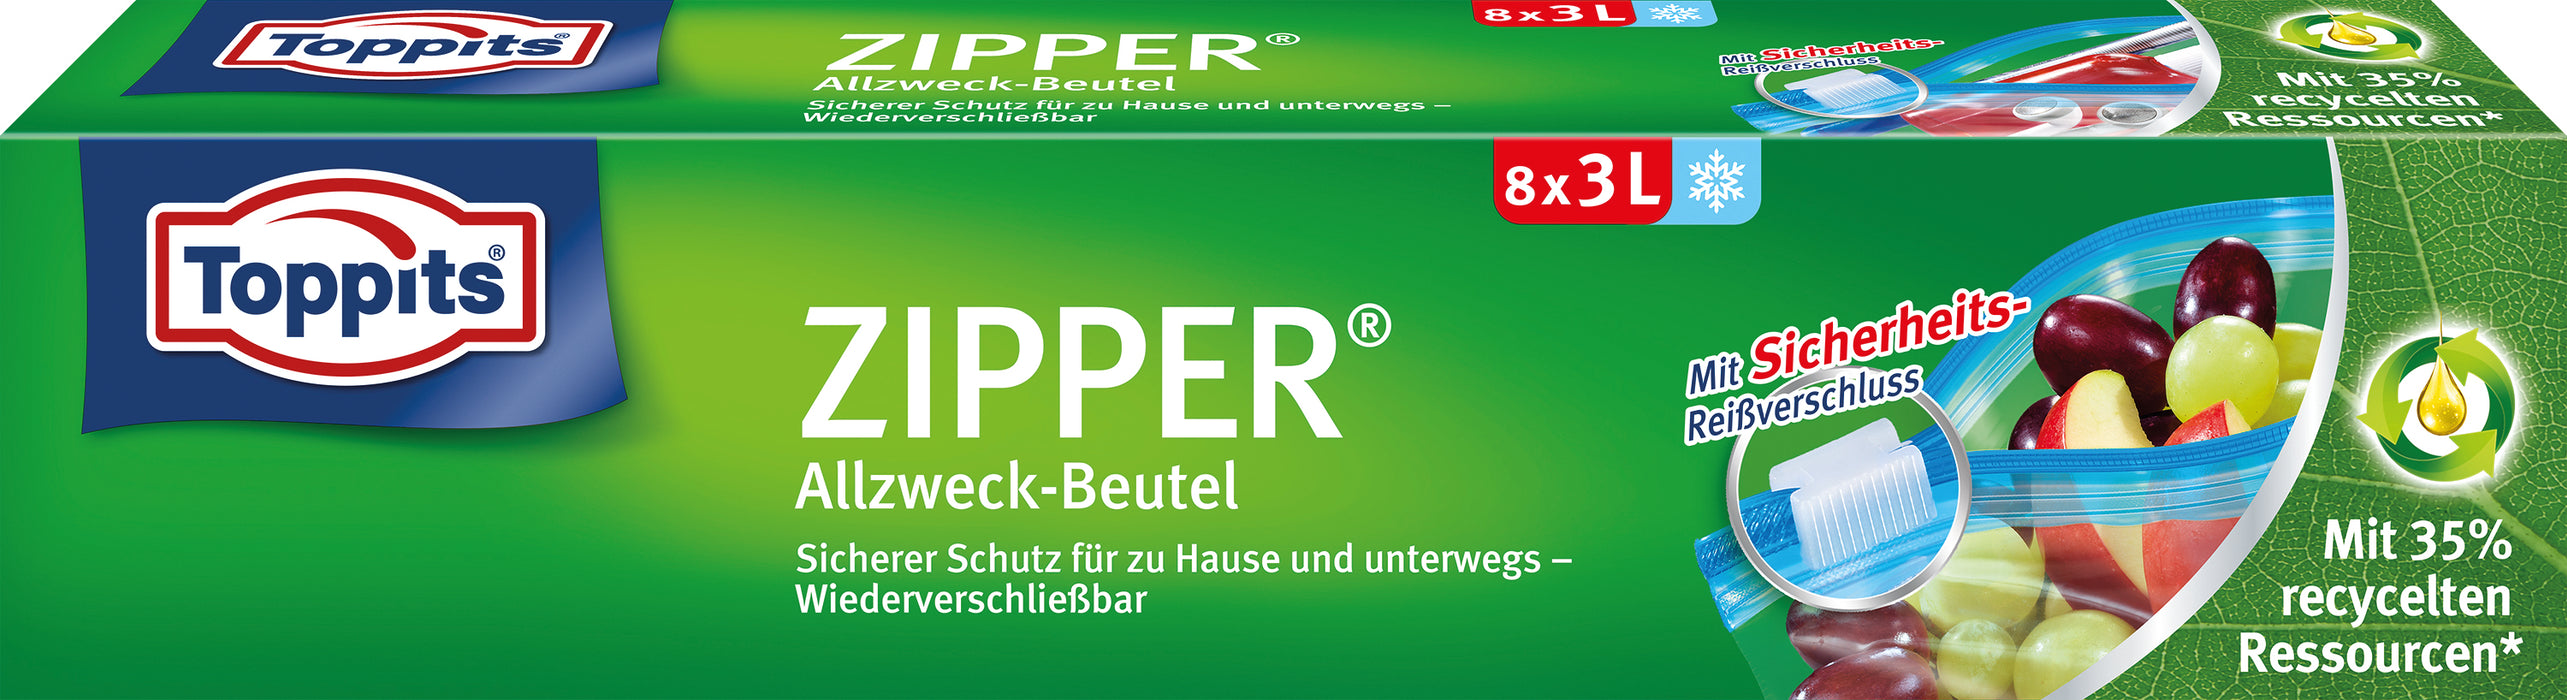 Toppits ZIPPER Allzweck-Beutel 8x 3L Sicherer Schutz für zu Hause und unterwegs - Wiederverschließbar